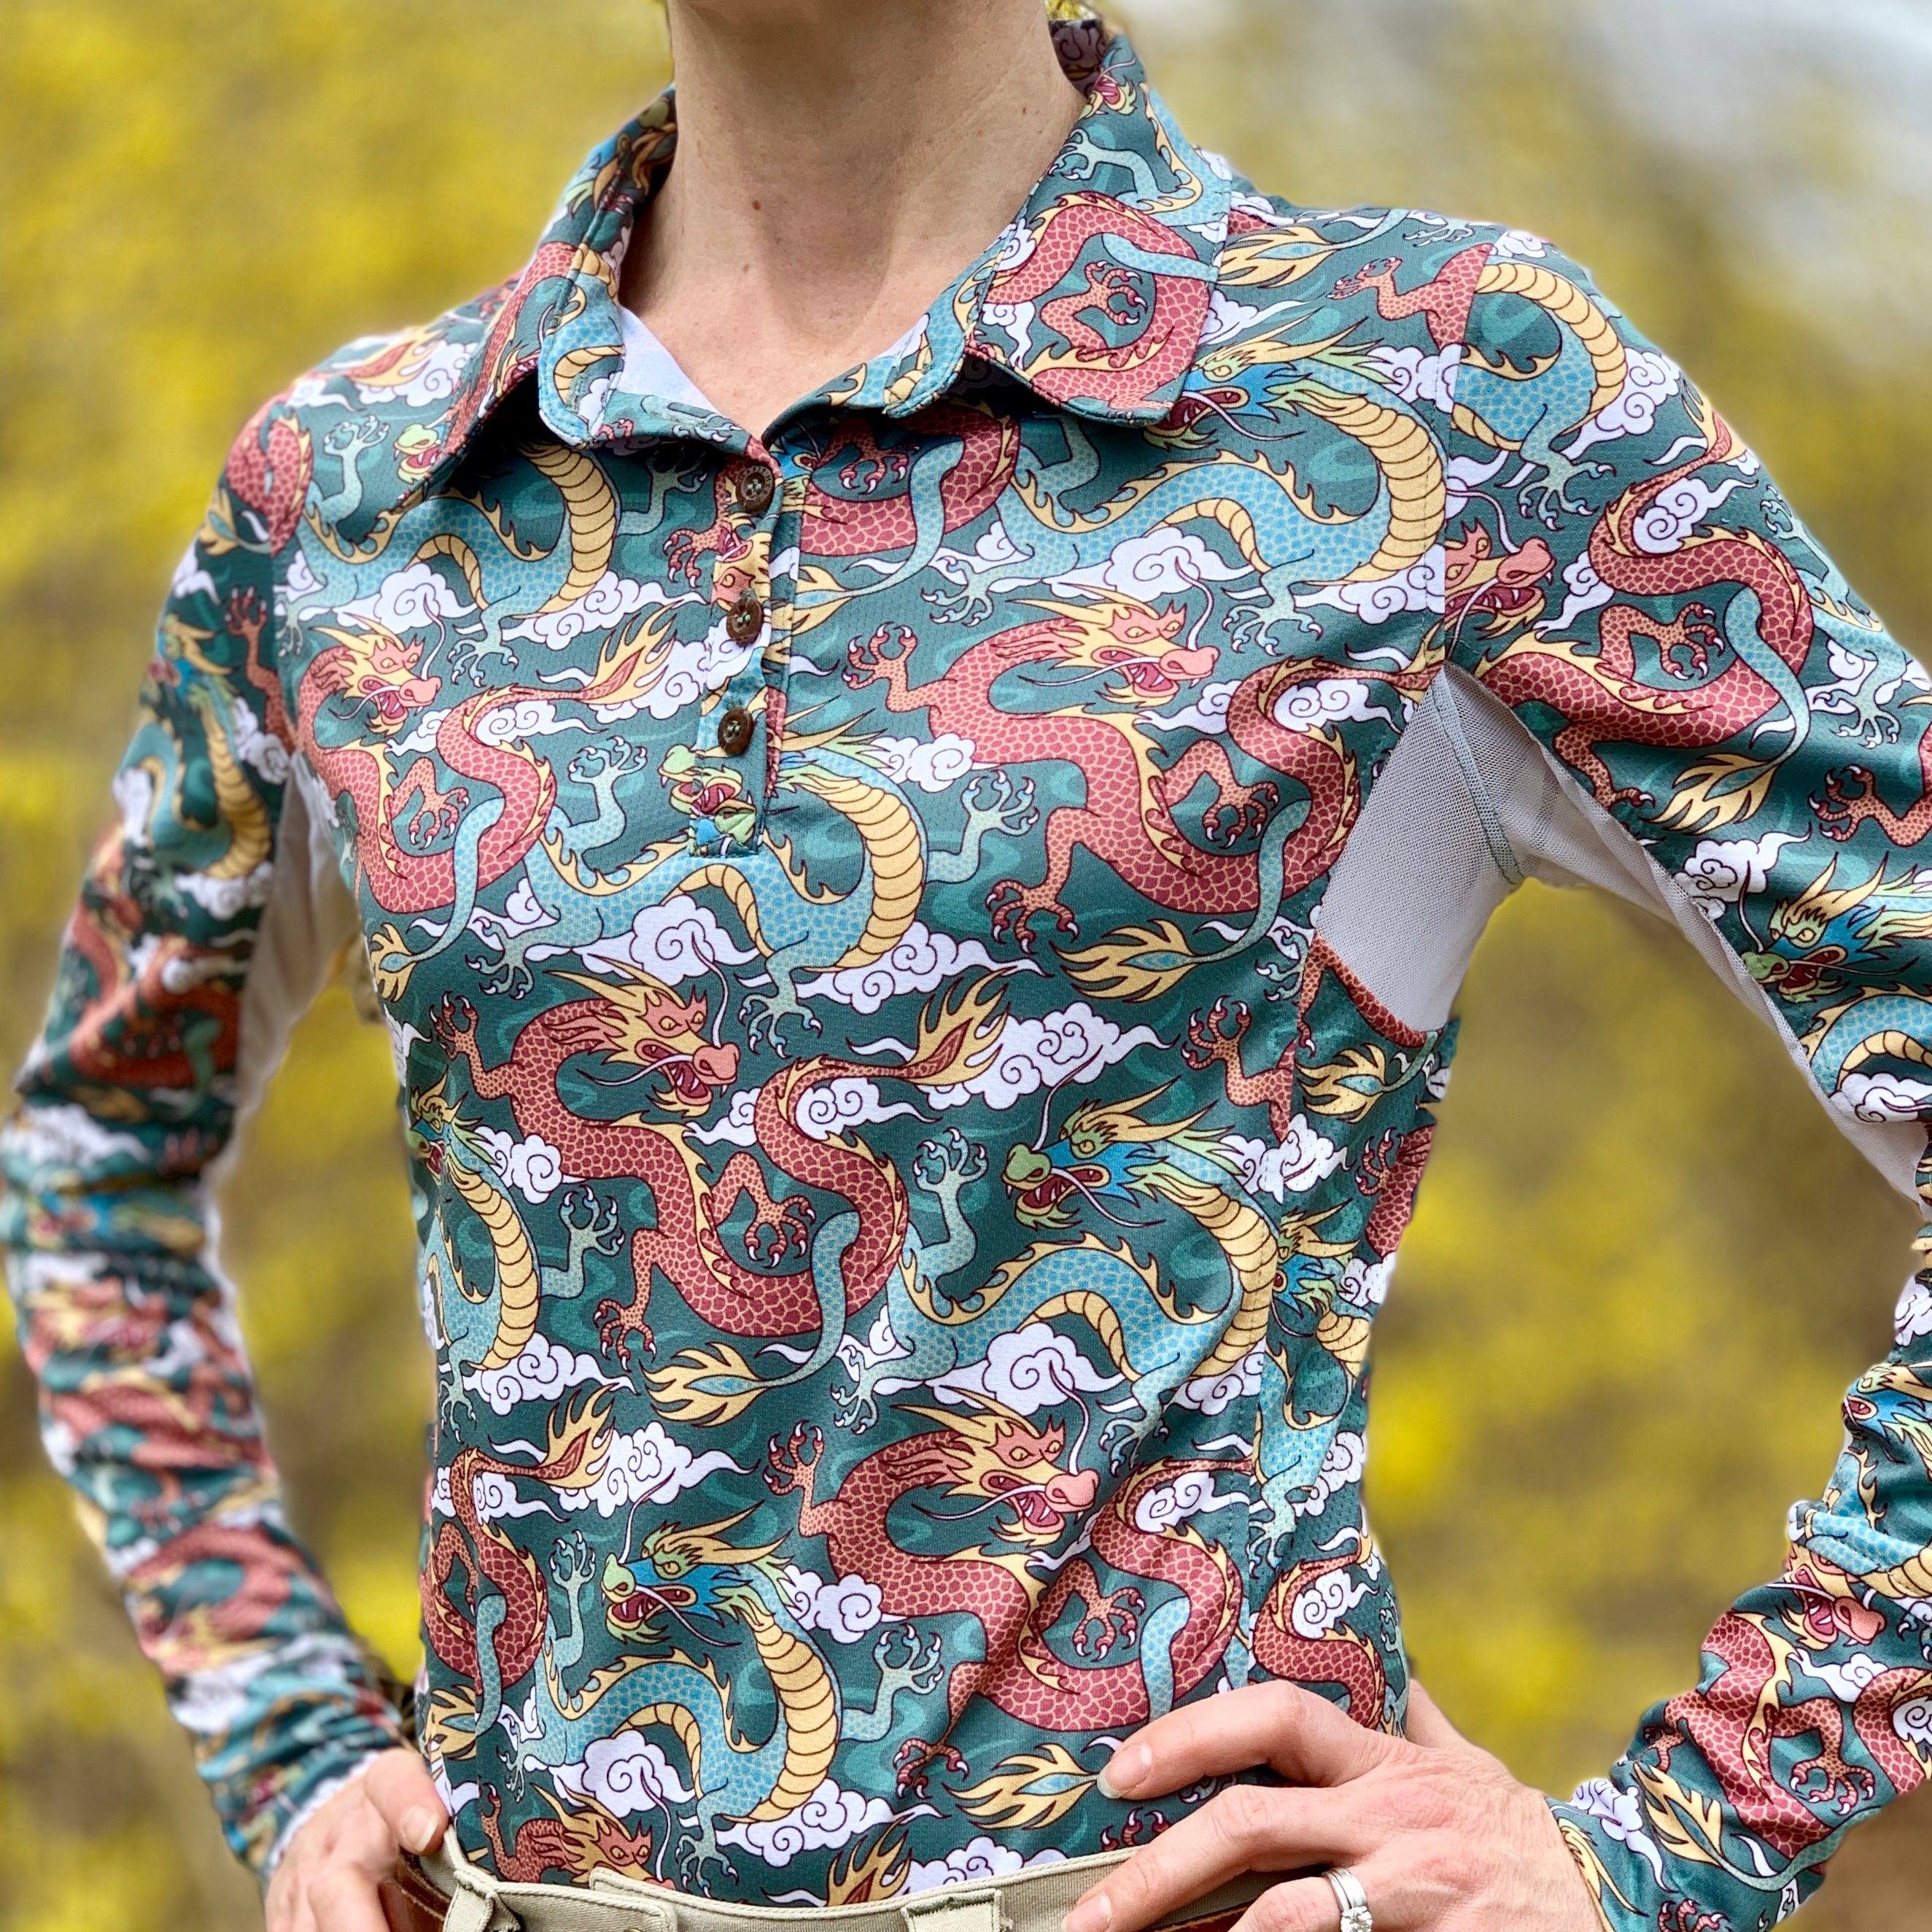 Equestrian Clothing - Sun Shirts for Women - Polo Shirts for Women